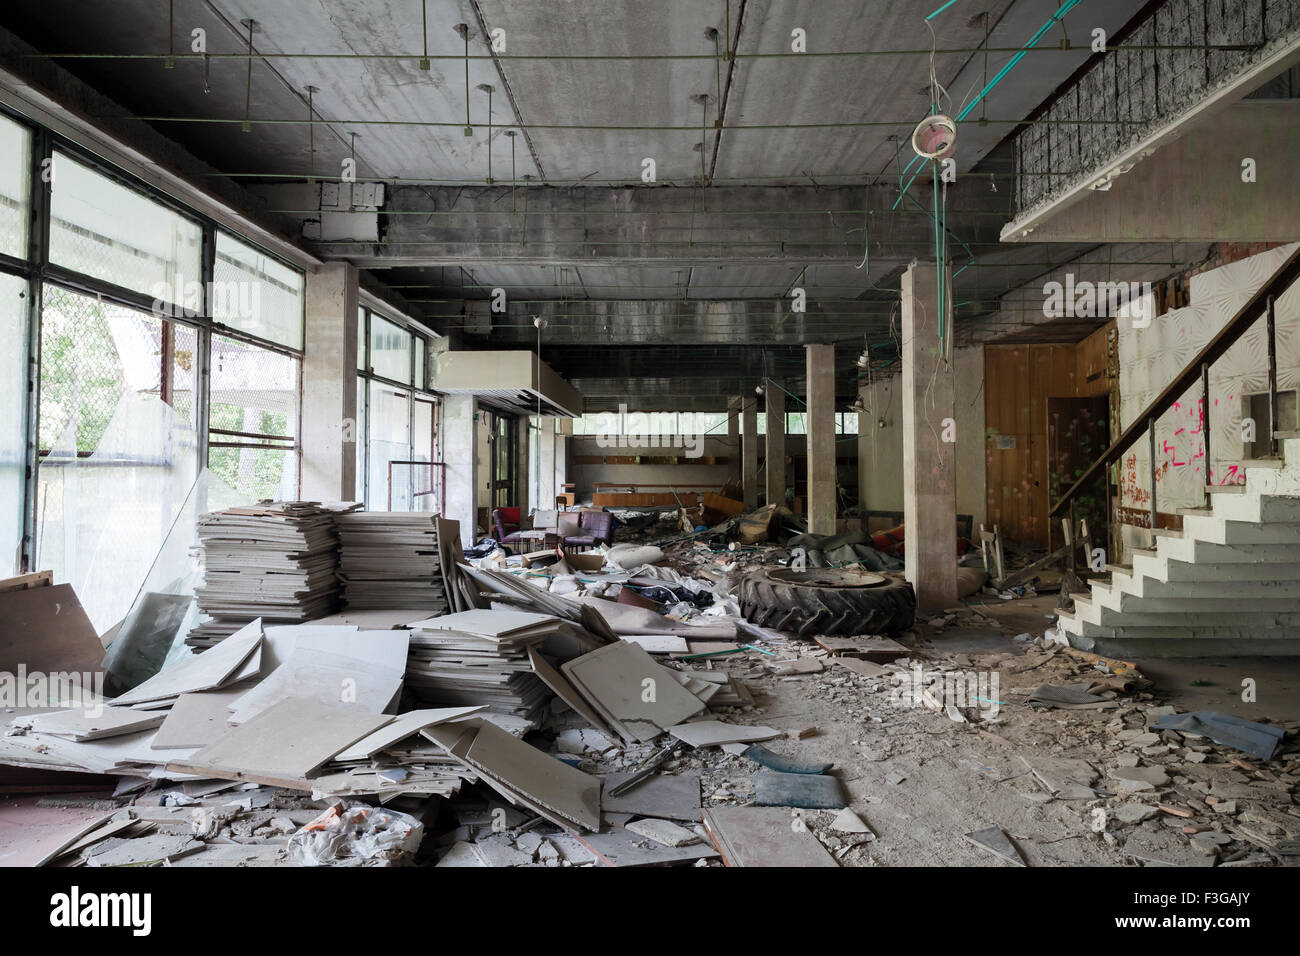 Verlassene Gebäudeinnenraum. Korridor-Perspektive mit Schmutz auf dem Boden und zerbrochenen Fensterscheiben Stockfoto